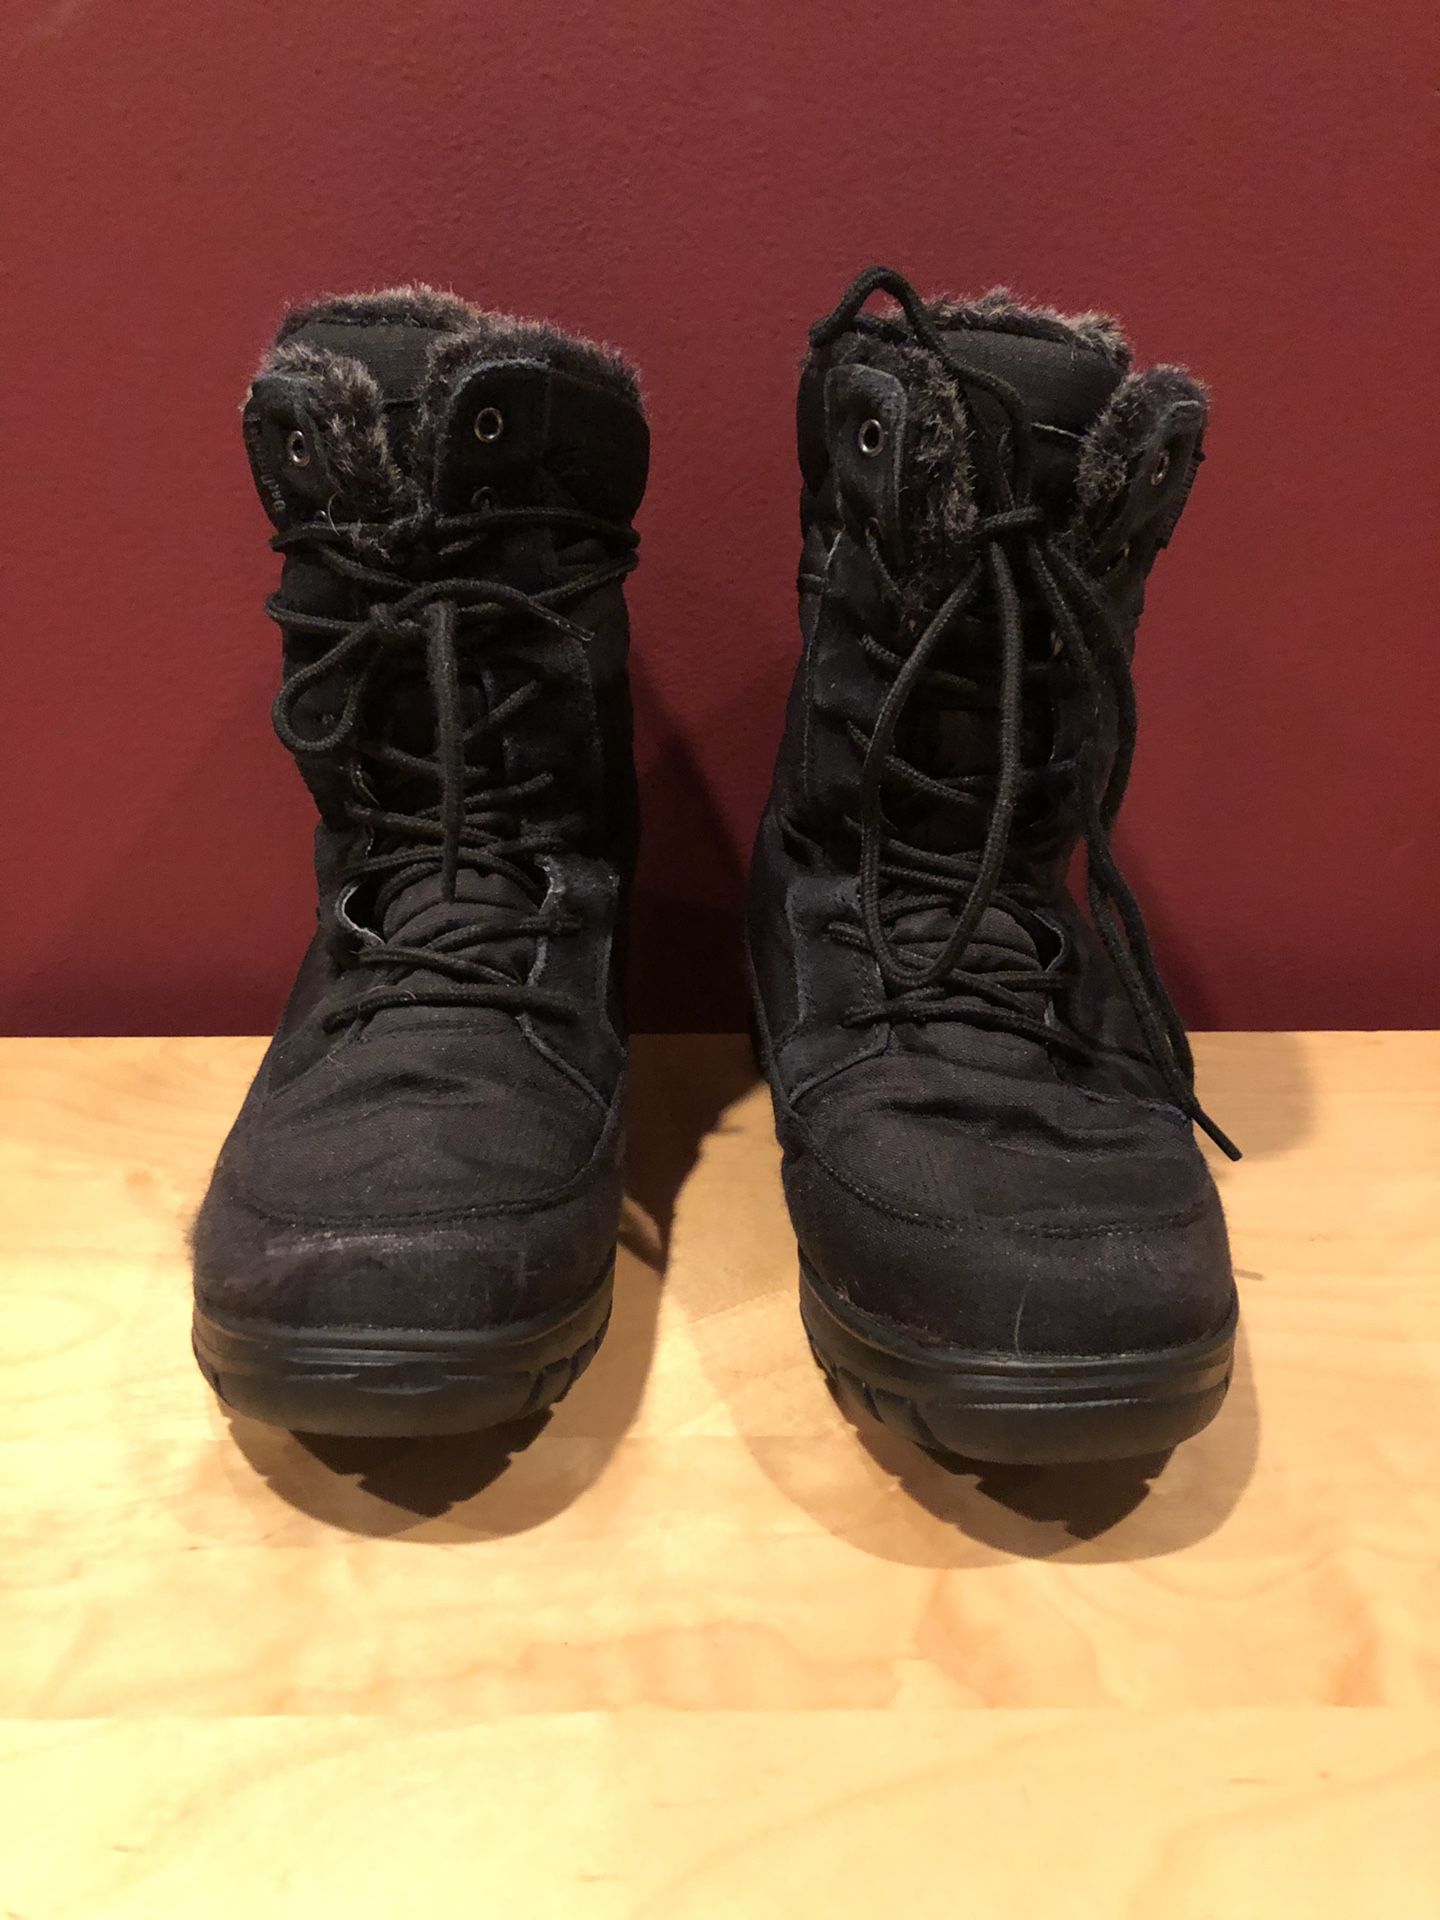 Kamik ladies size 8 waterproof snow boots black